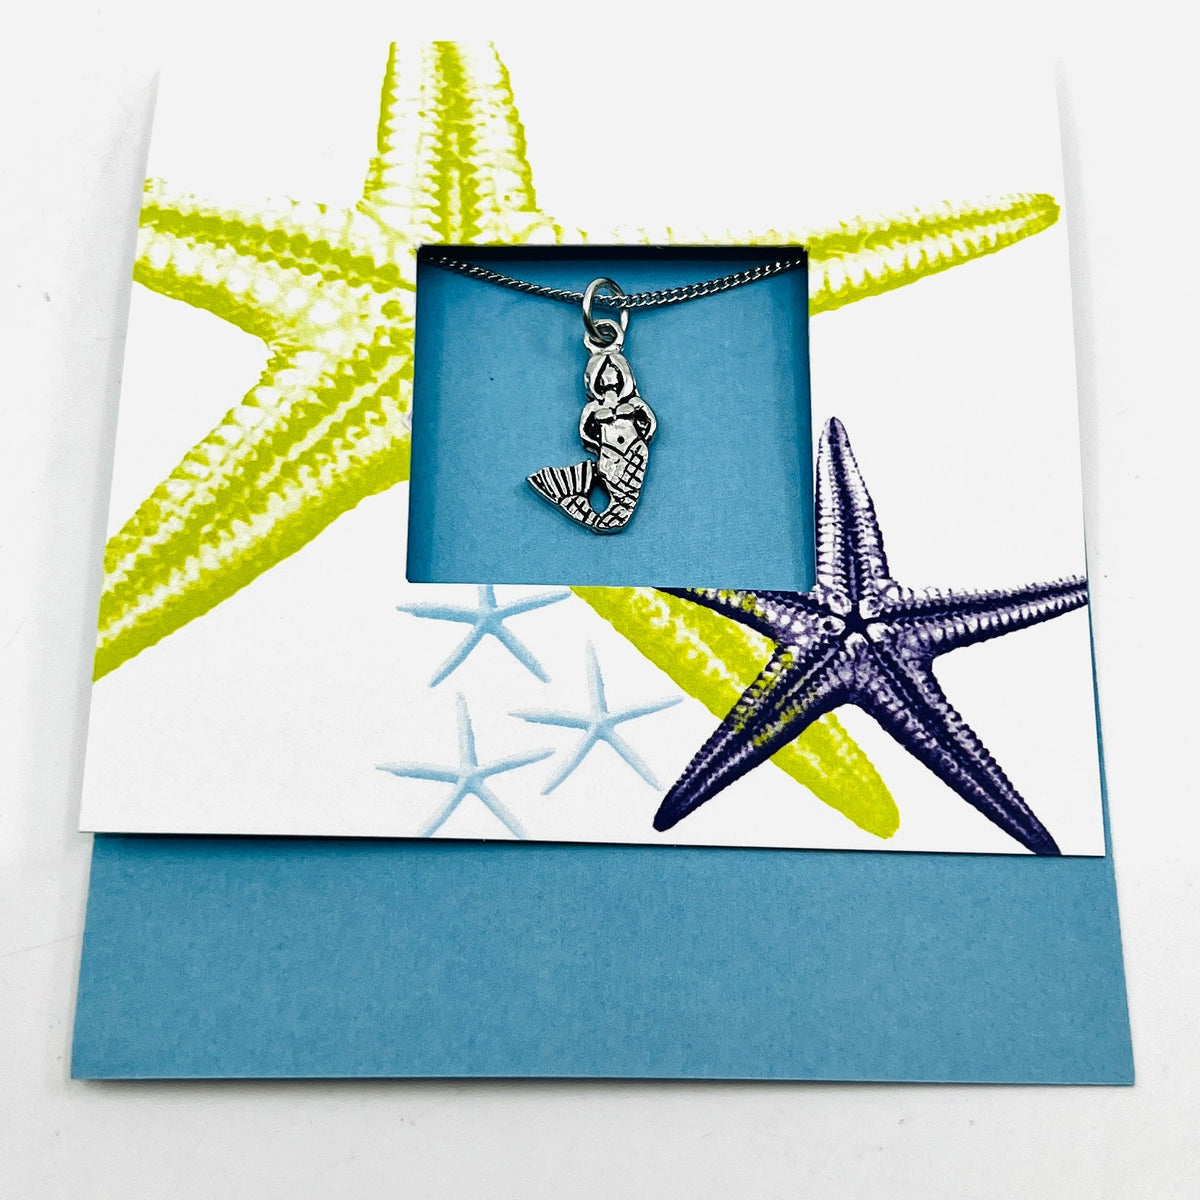 Pewter Mermaid Pendant Necklace Jewelry Basic Spirit 